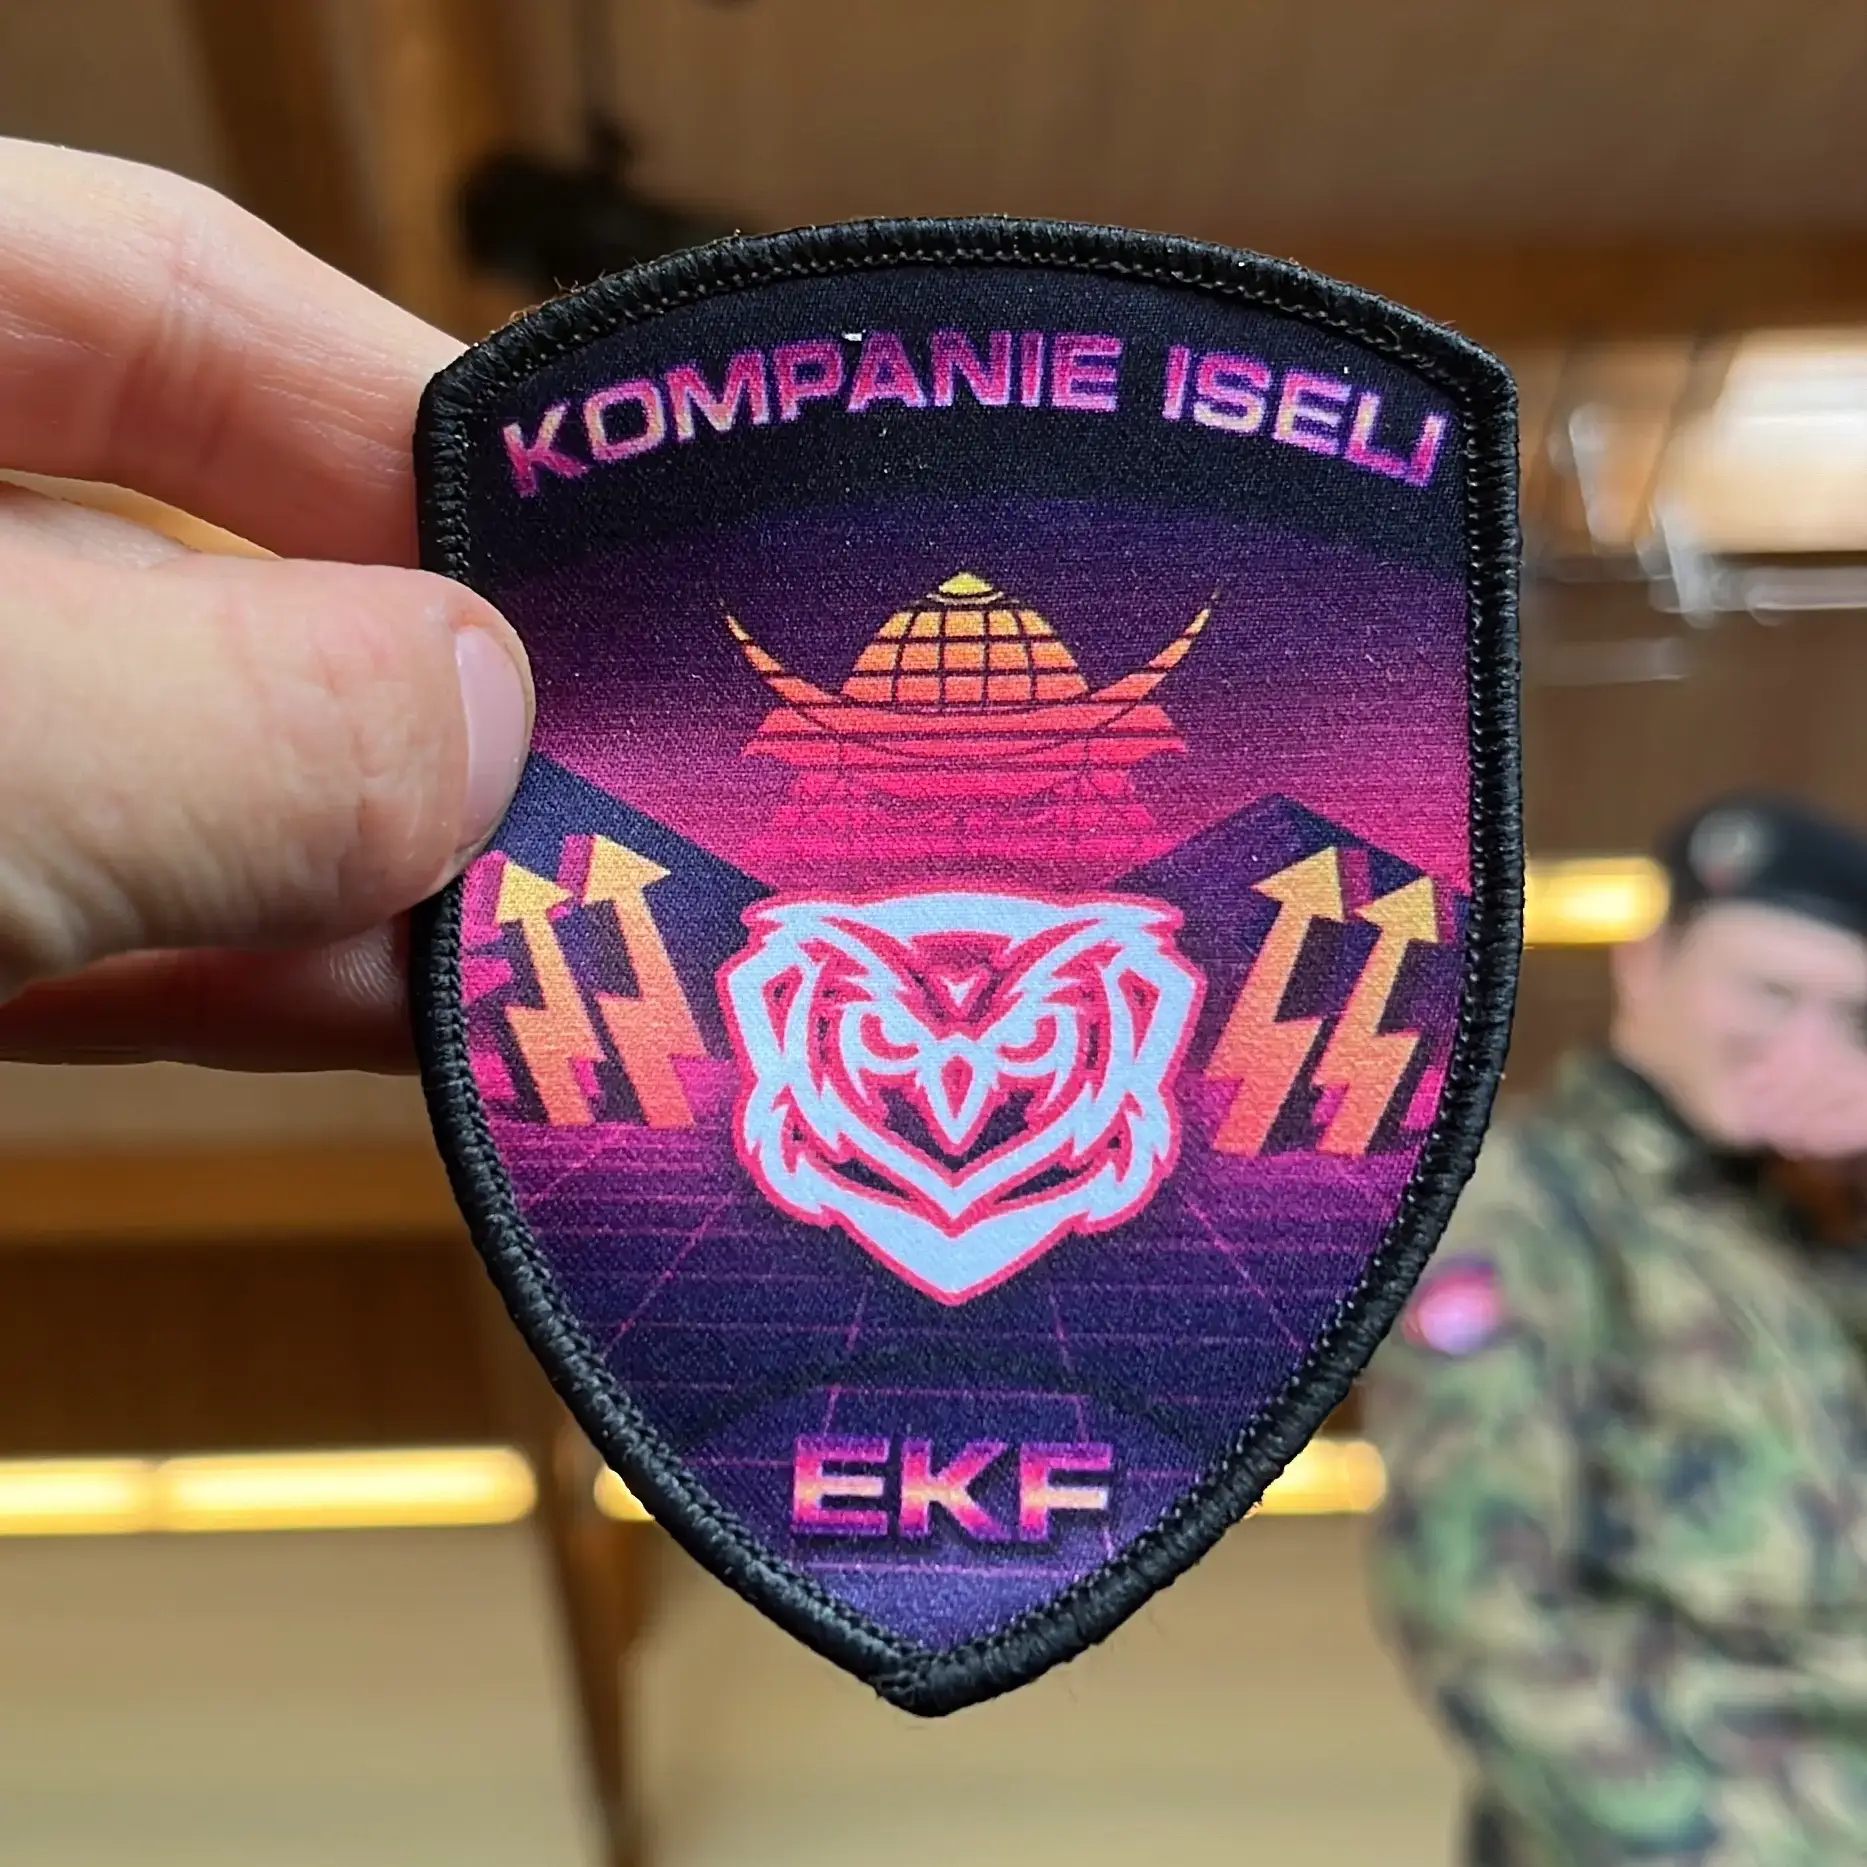 Militärisches Abzeichen von RS gekauft und hergestellt auf RS Badge. Man sieht eine Eule auf einem violetten vaporwave Hintergrund. Auf beiden Seiten sieht man eine Art Blitz, der aus dem weißen Boden kommt.